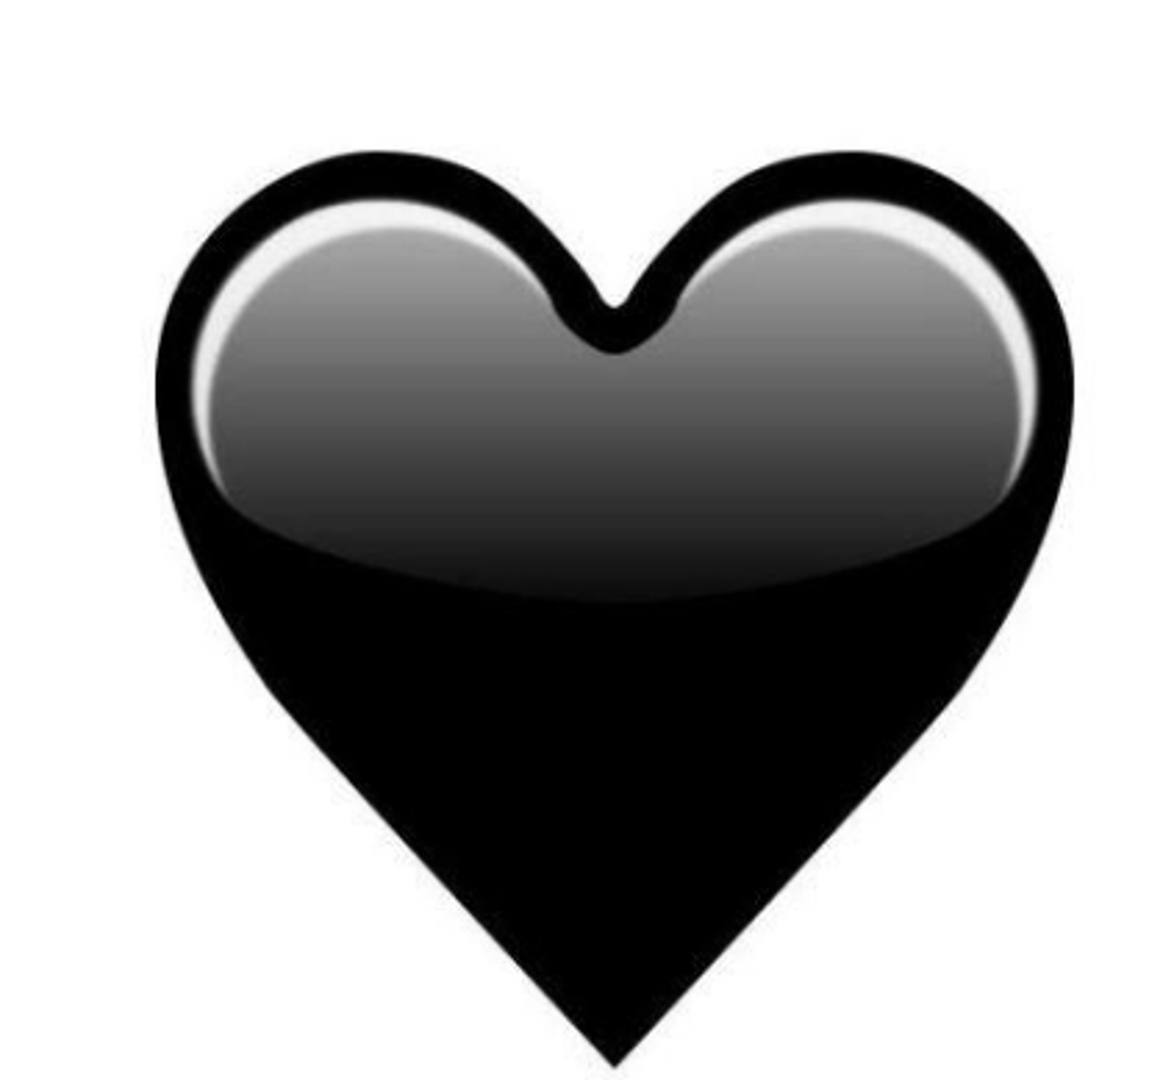 Crno srce je novije među emojijima, a uglavnom se koristiti kako bi se dočarao crni humor. Suprotno od crvenog, ono predstavlja morbidnost.
